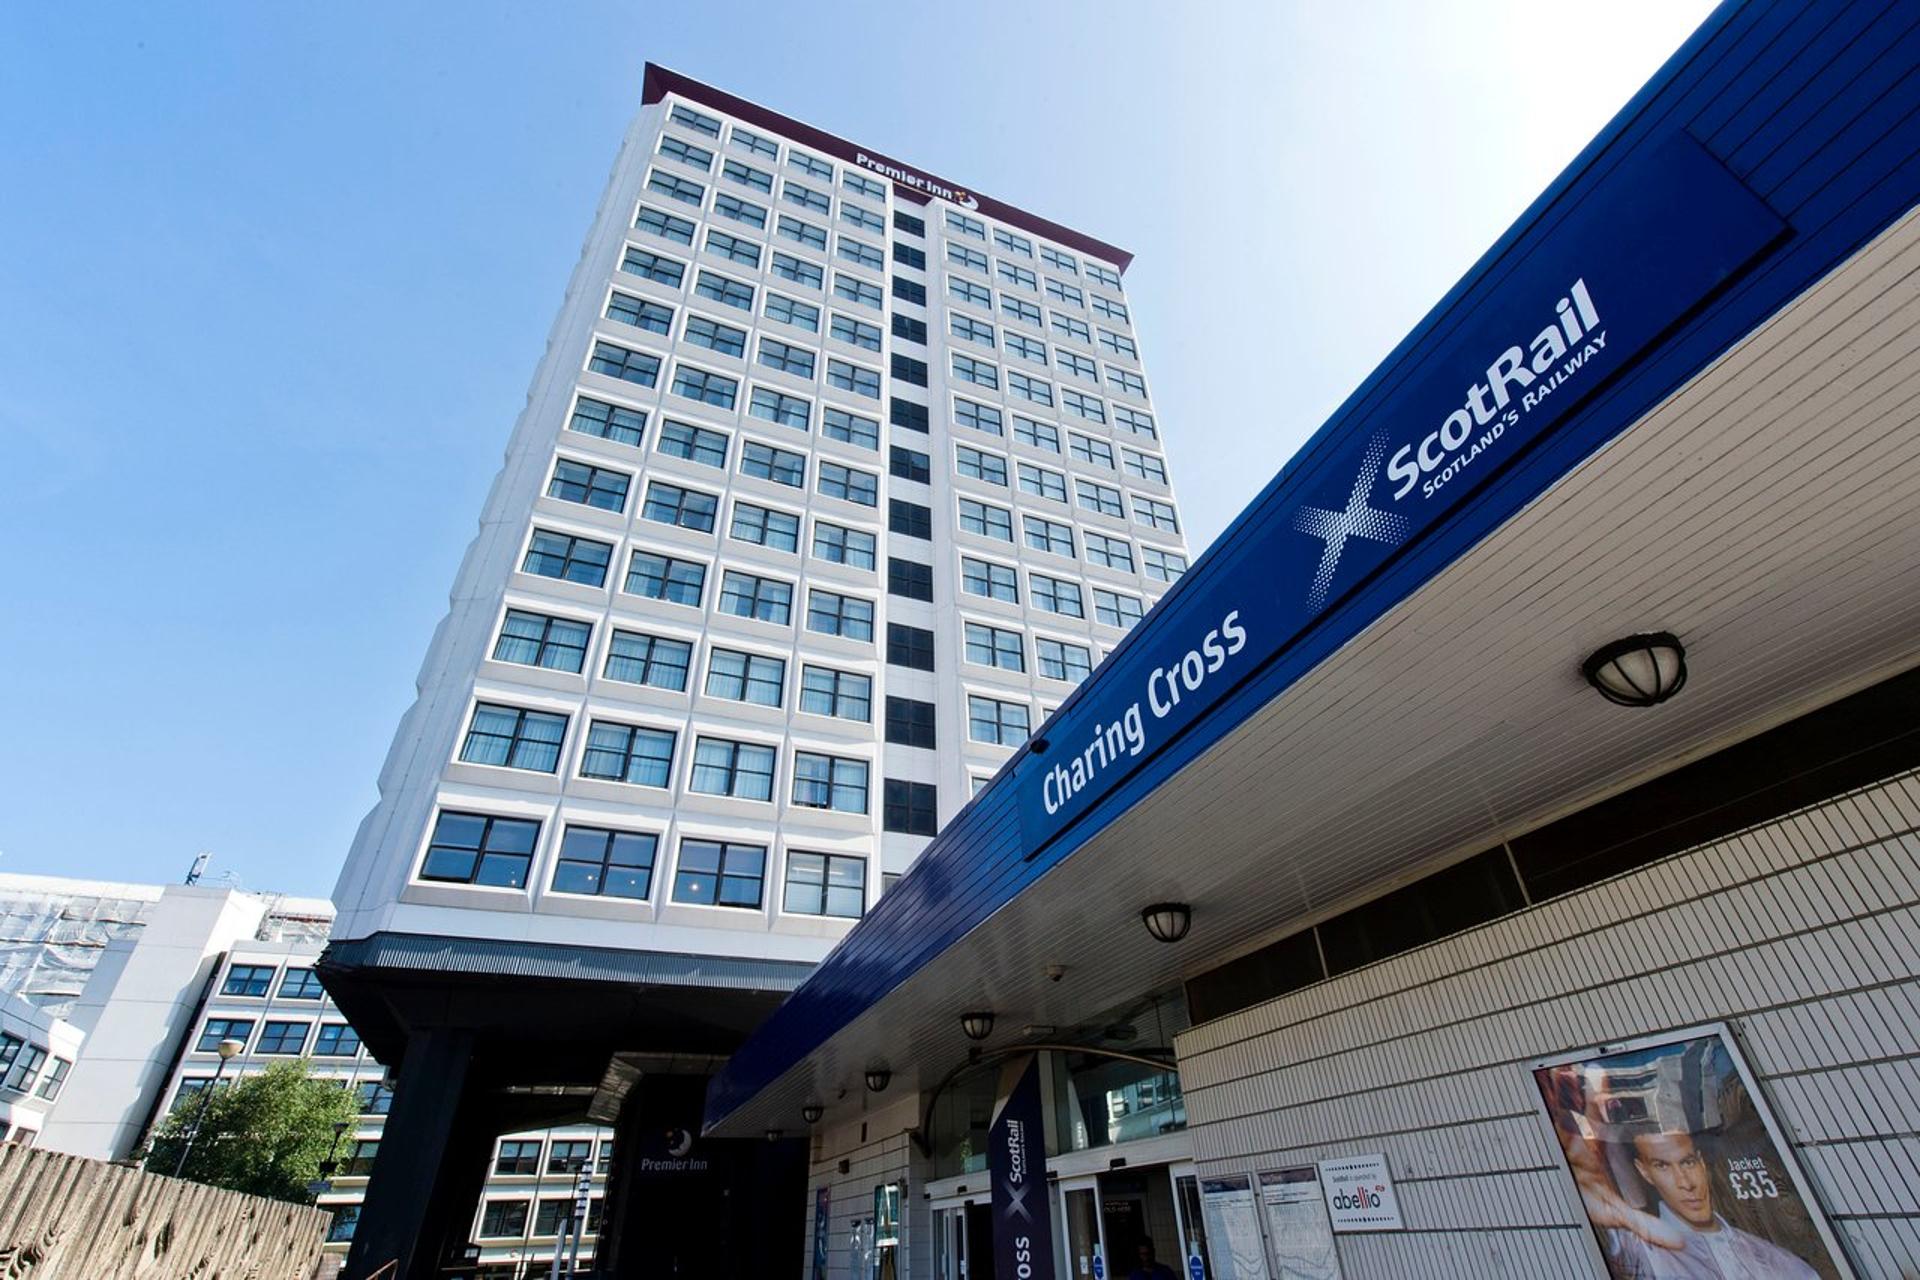 Glasgow Premier Inn hits the market for £8.5m